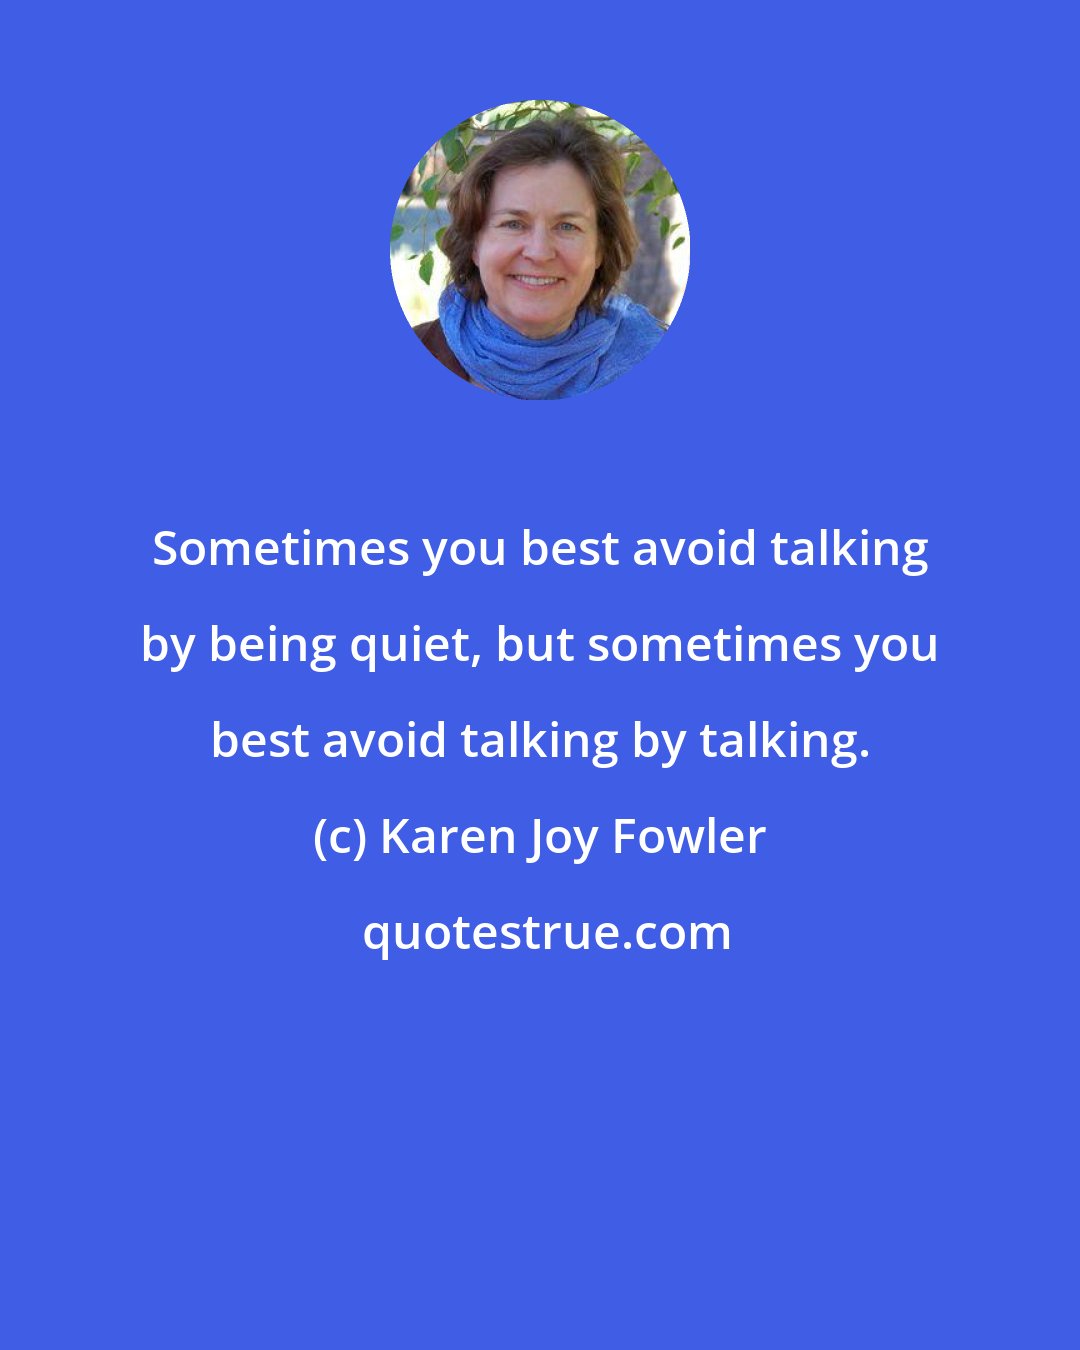 Karen Joy Fowler: Sometimes you best avoid talking by being quiet, but sometimes you best avoid talking by talking.